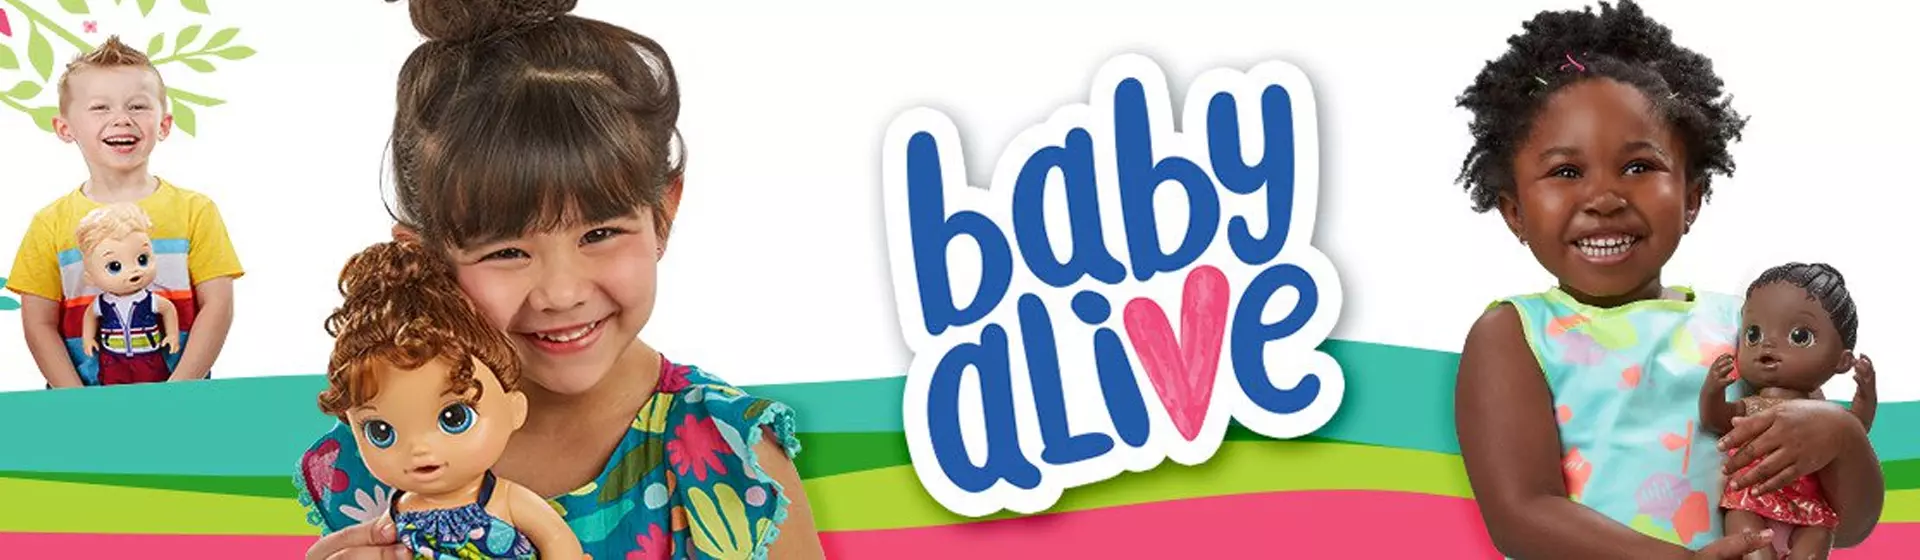 Boneca Baby Alive: conheça as 10 melhores para comprar